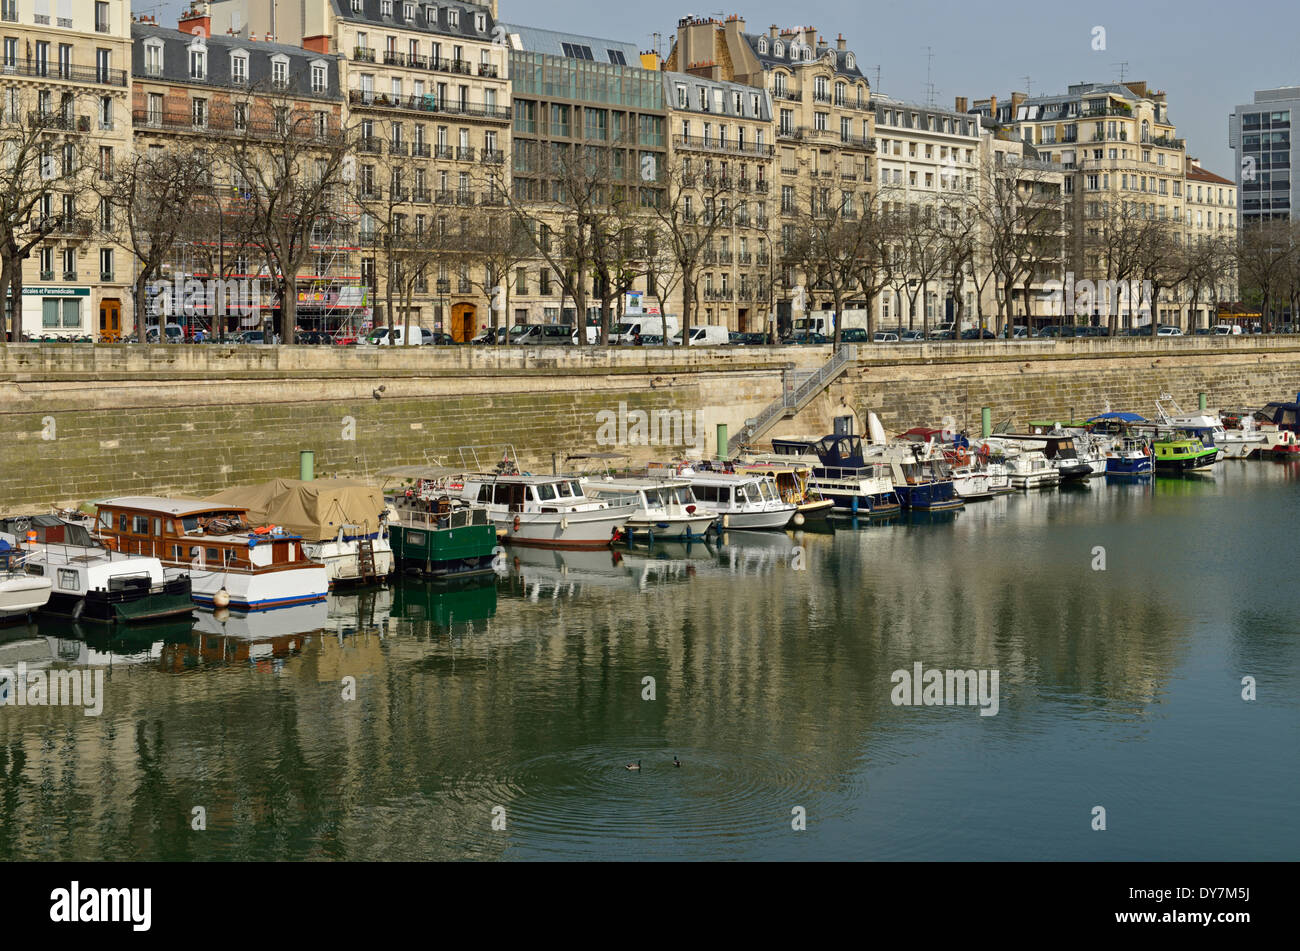 Bassin de l'Arsenal, 4th Arrondissement, Paris, France Stock Photo